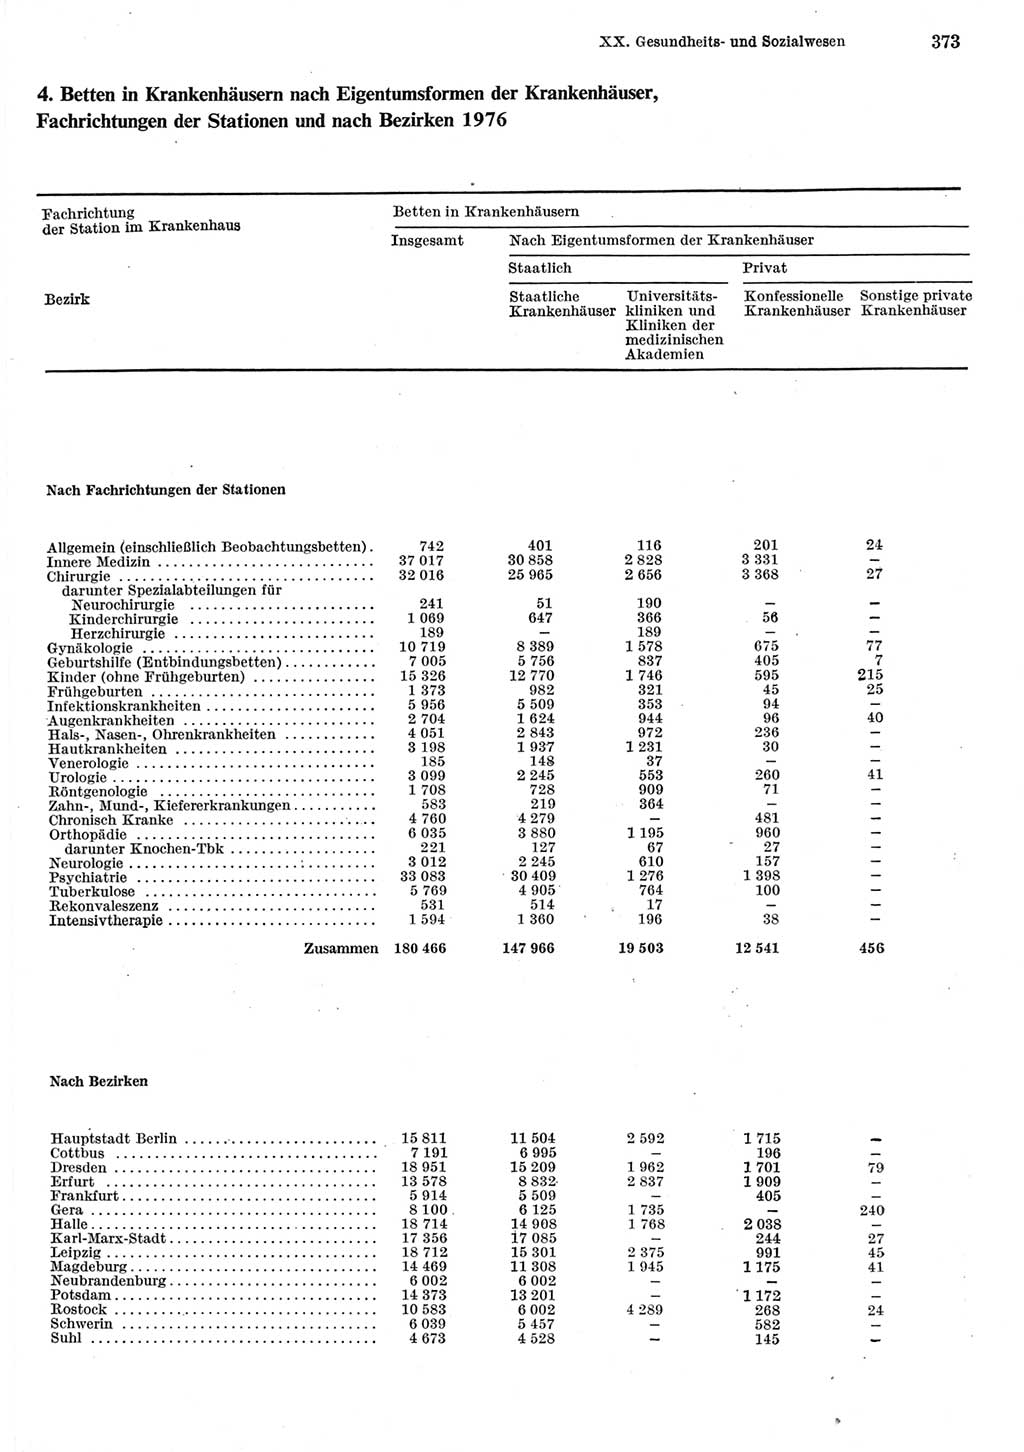 Statistisches Jahrbuch der Deutschen Demokratischen Republik (DDR) 1977, Seite 373 (Stat. Jb. DDR 1977, S. 373)